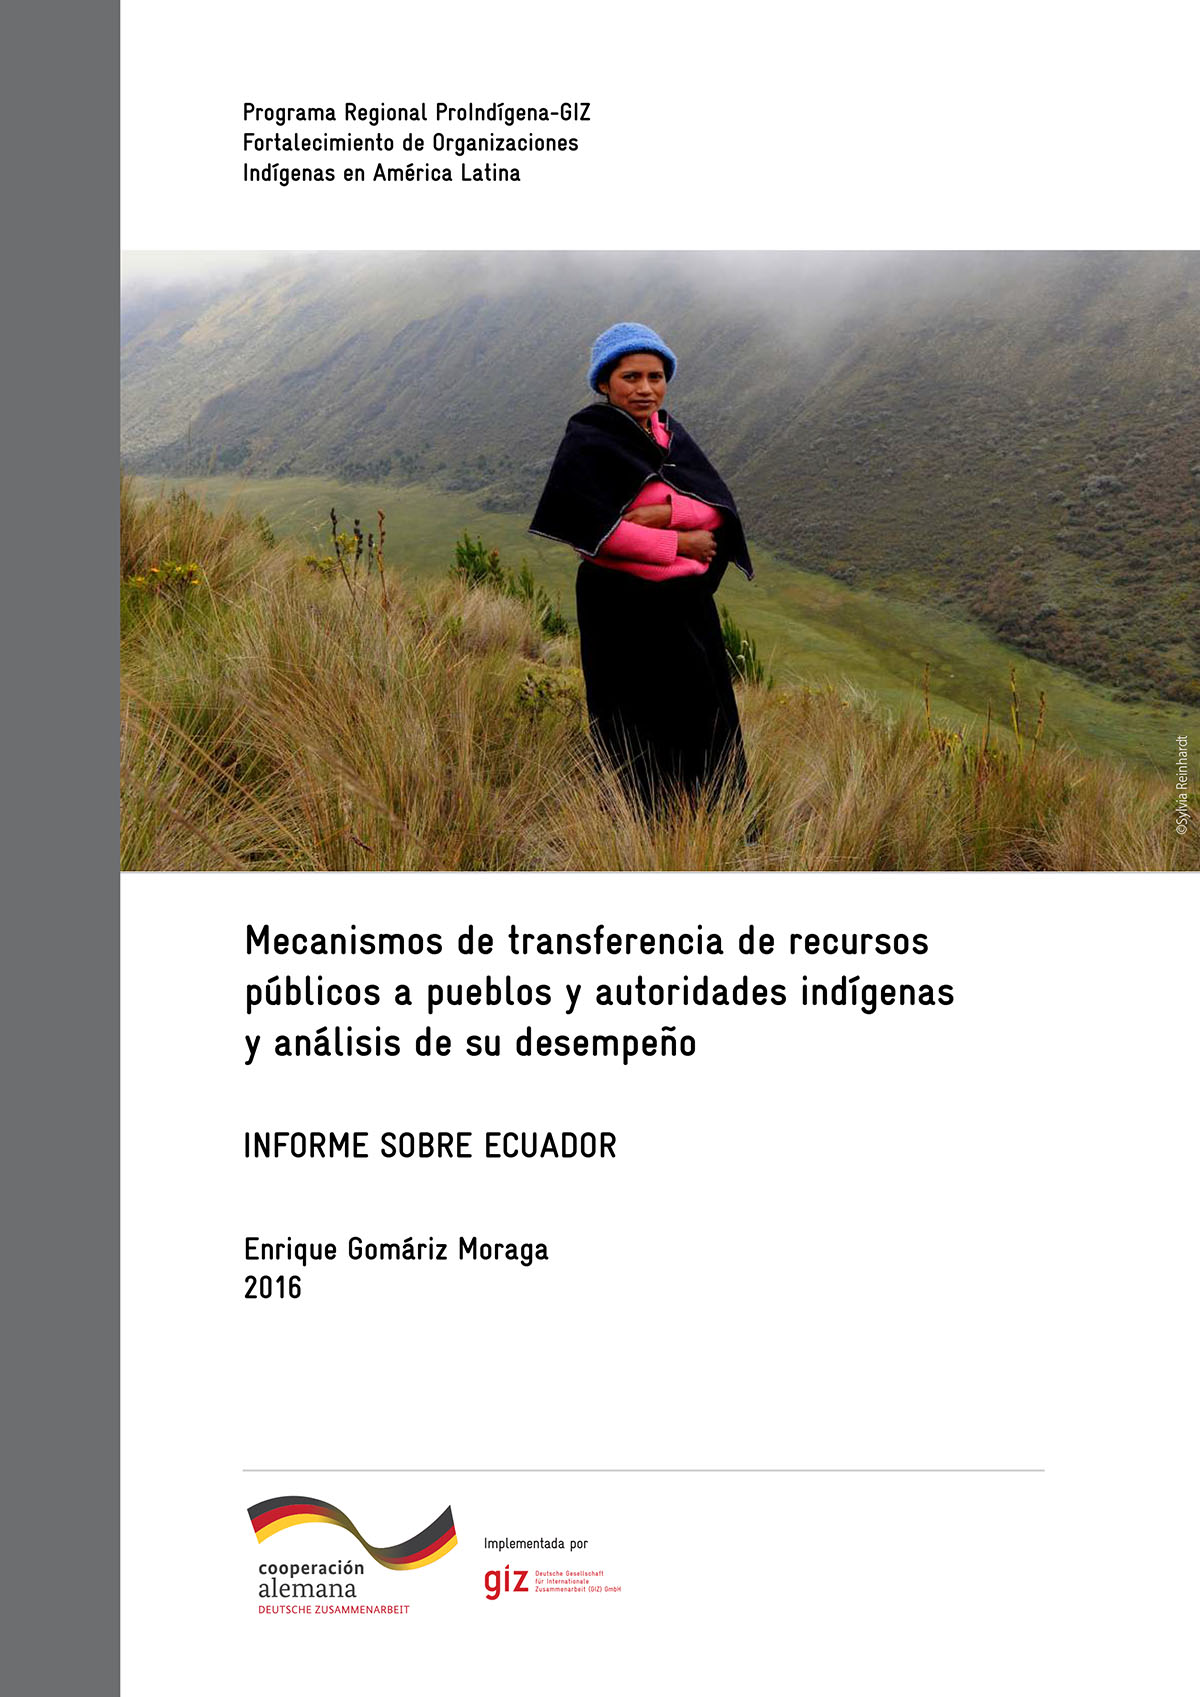 Mecanismos de transferencia de recursos públicos a pueblos y autoridades indígenas y análisis de su desempeño: informe sobre Ecuador